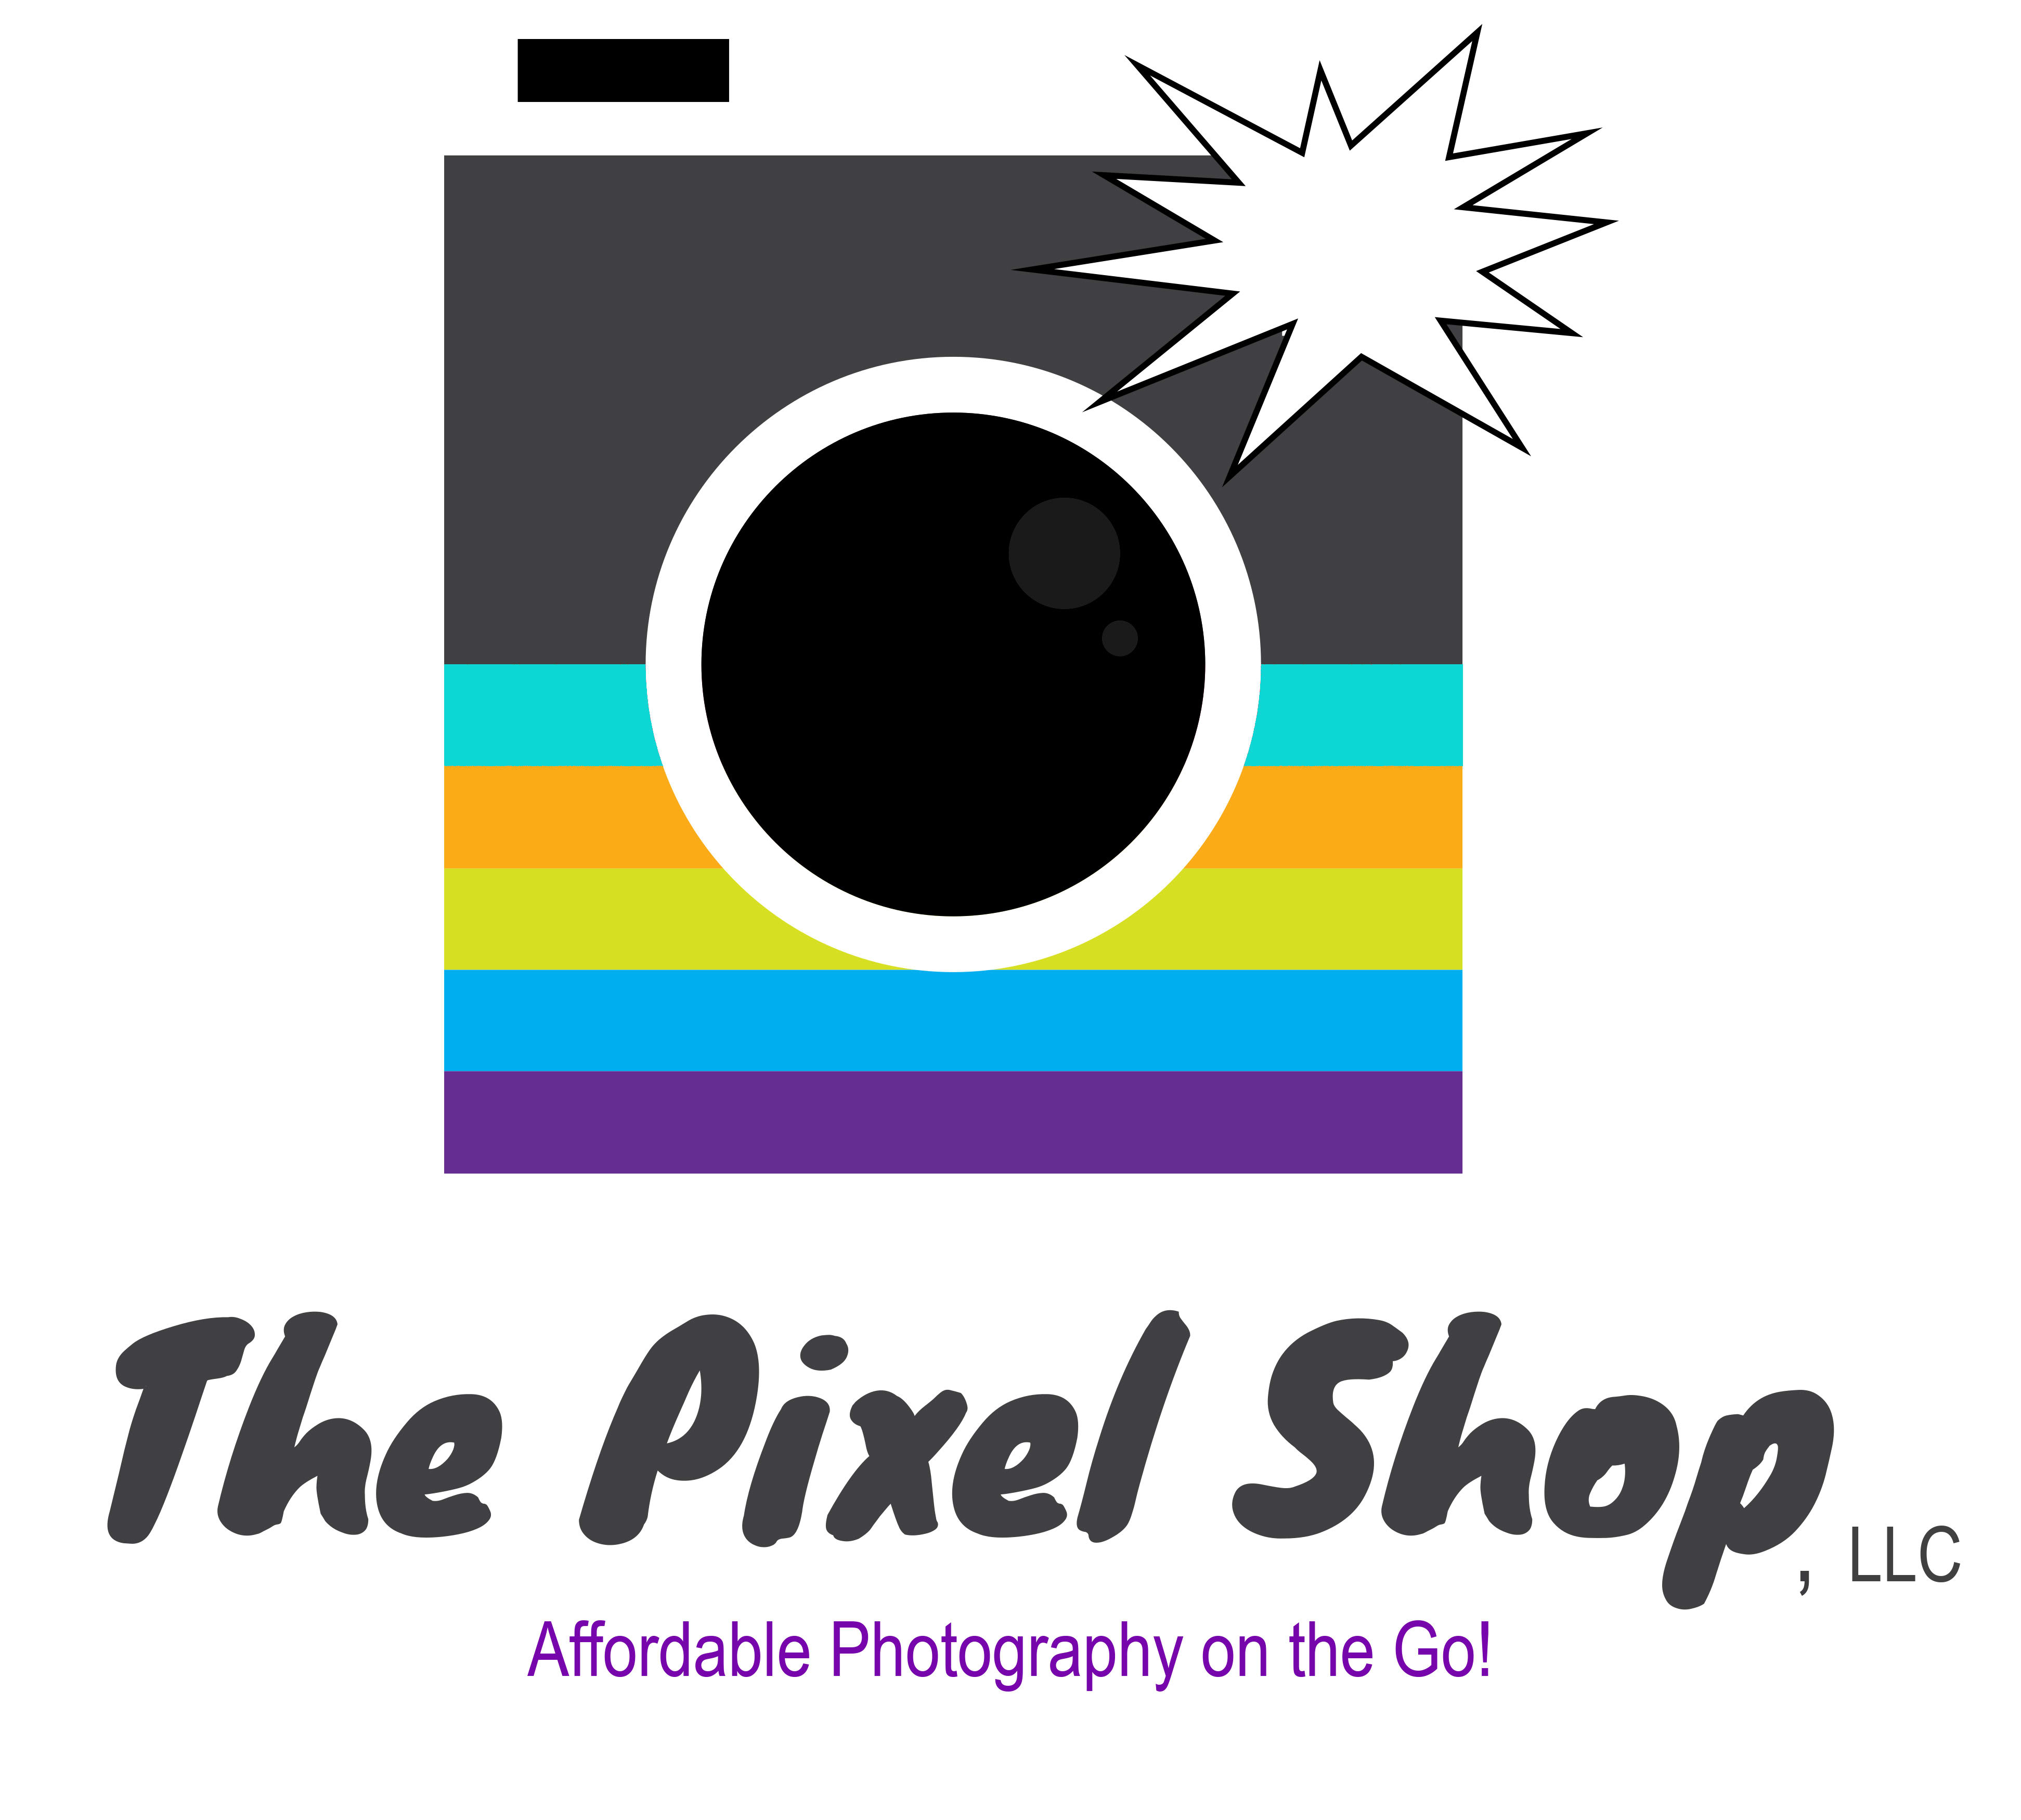 The Pixel Shop, LLC